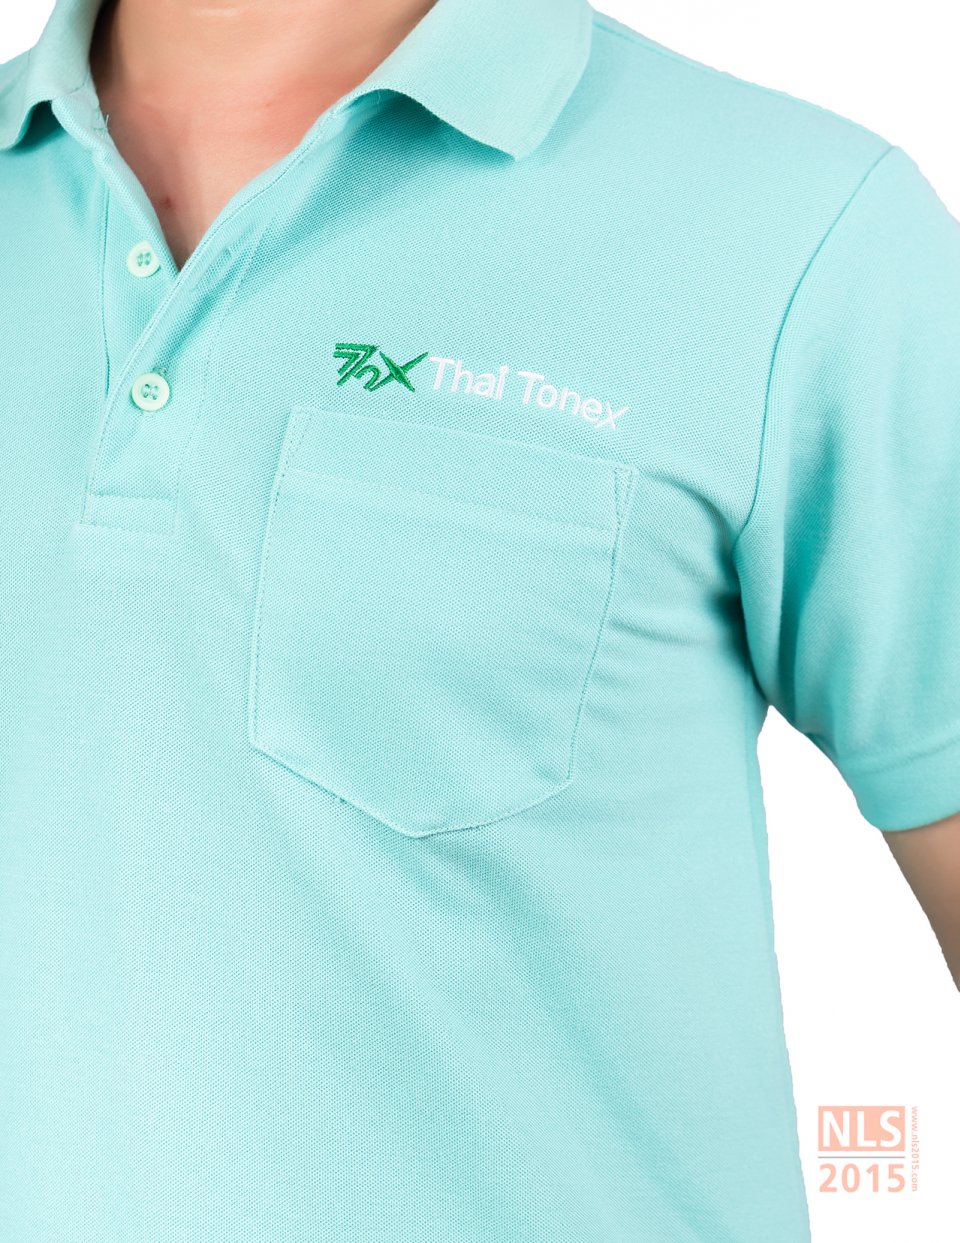 รับผลิตเสื้อโปโล ราคาถูก รับผลิตเสื้อโปโลตามแบบที่ต้องการ โรงงานผลิตเสื้อโปโล เนื้อผ้า TC TK CVC Cotton Drytechรูปที่ 